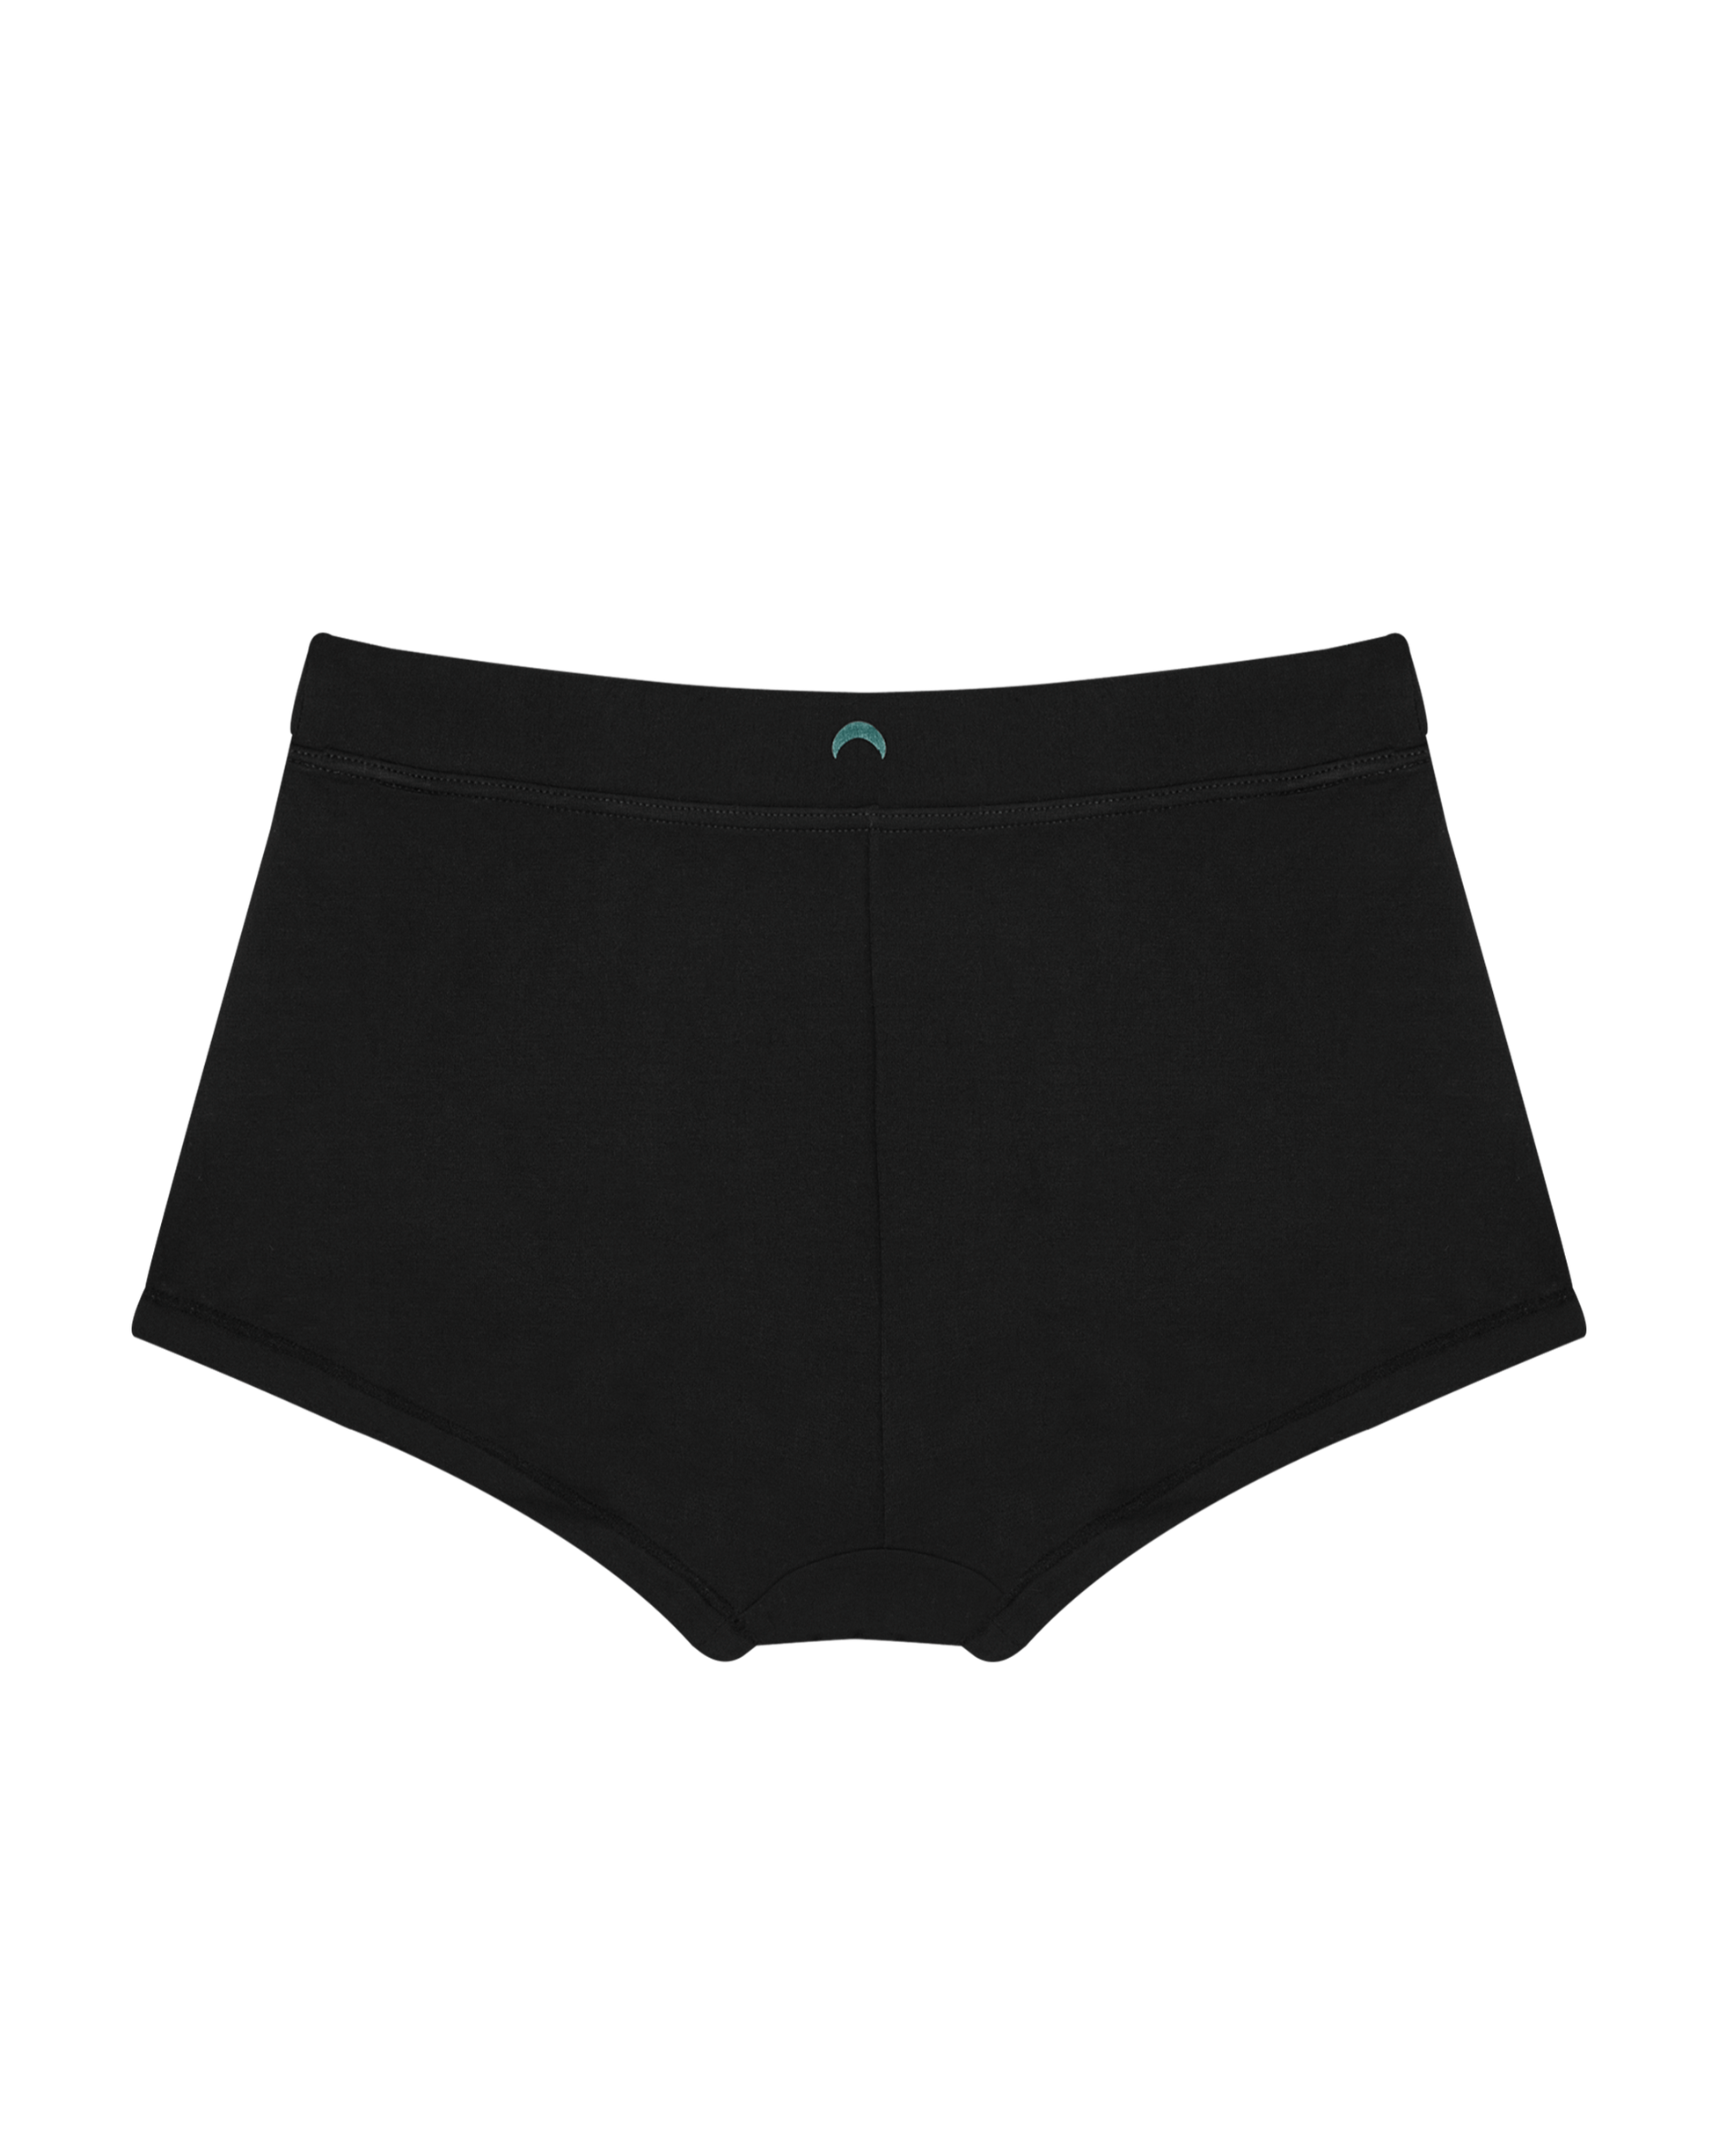 Ladies' Underwear Shorts, Women's Underwear